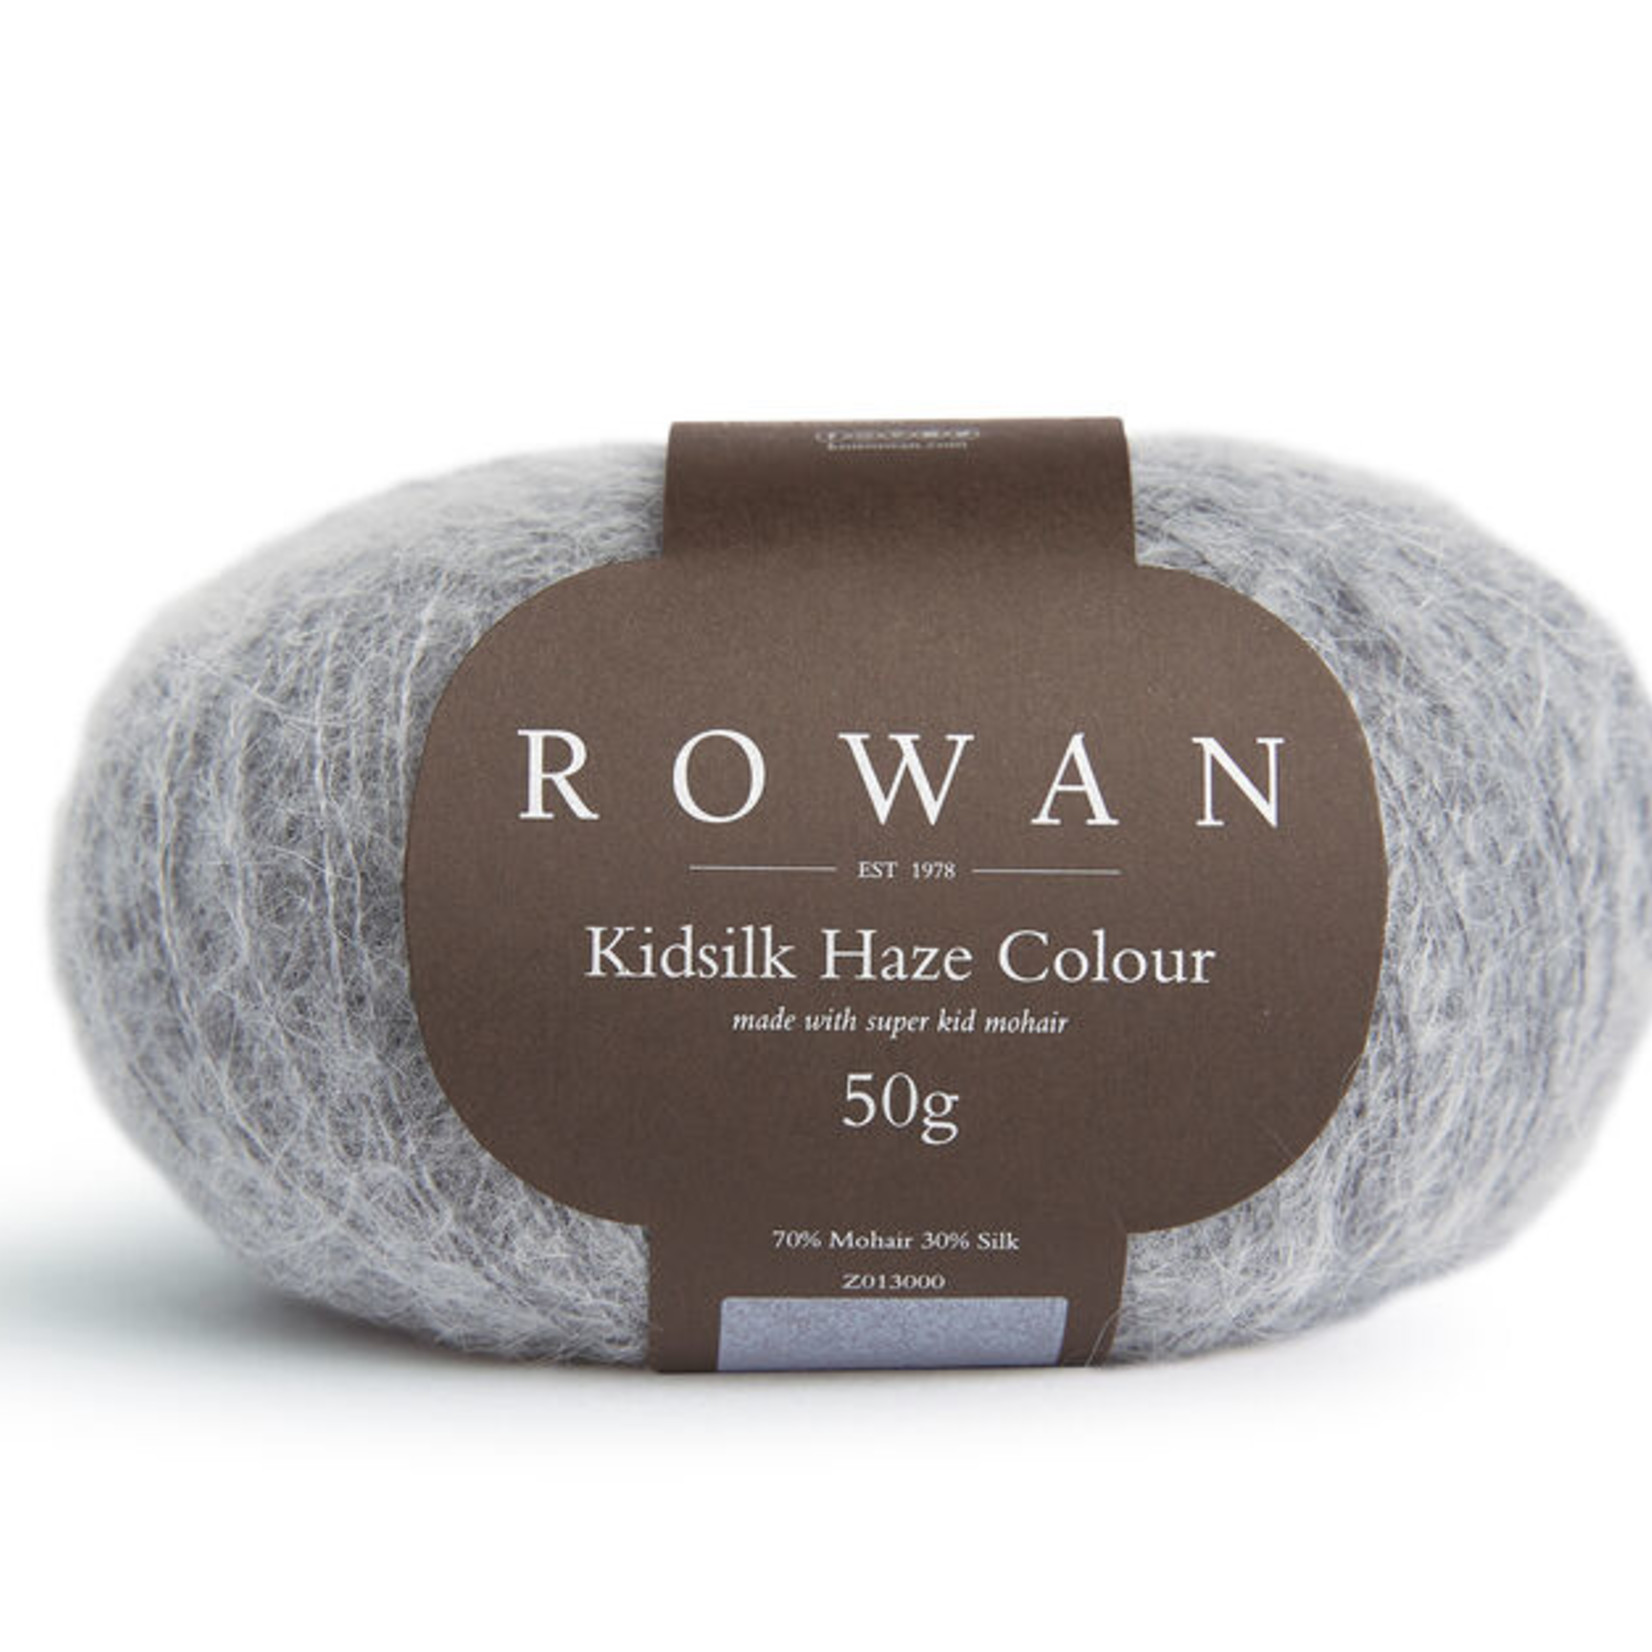 Rowan RN KSH Colour